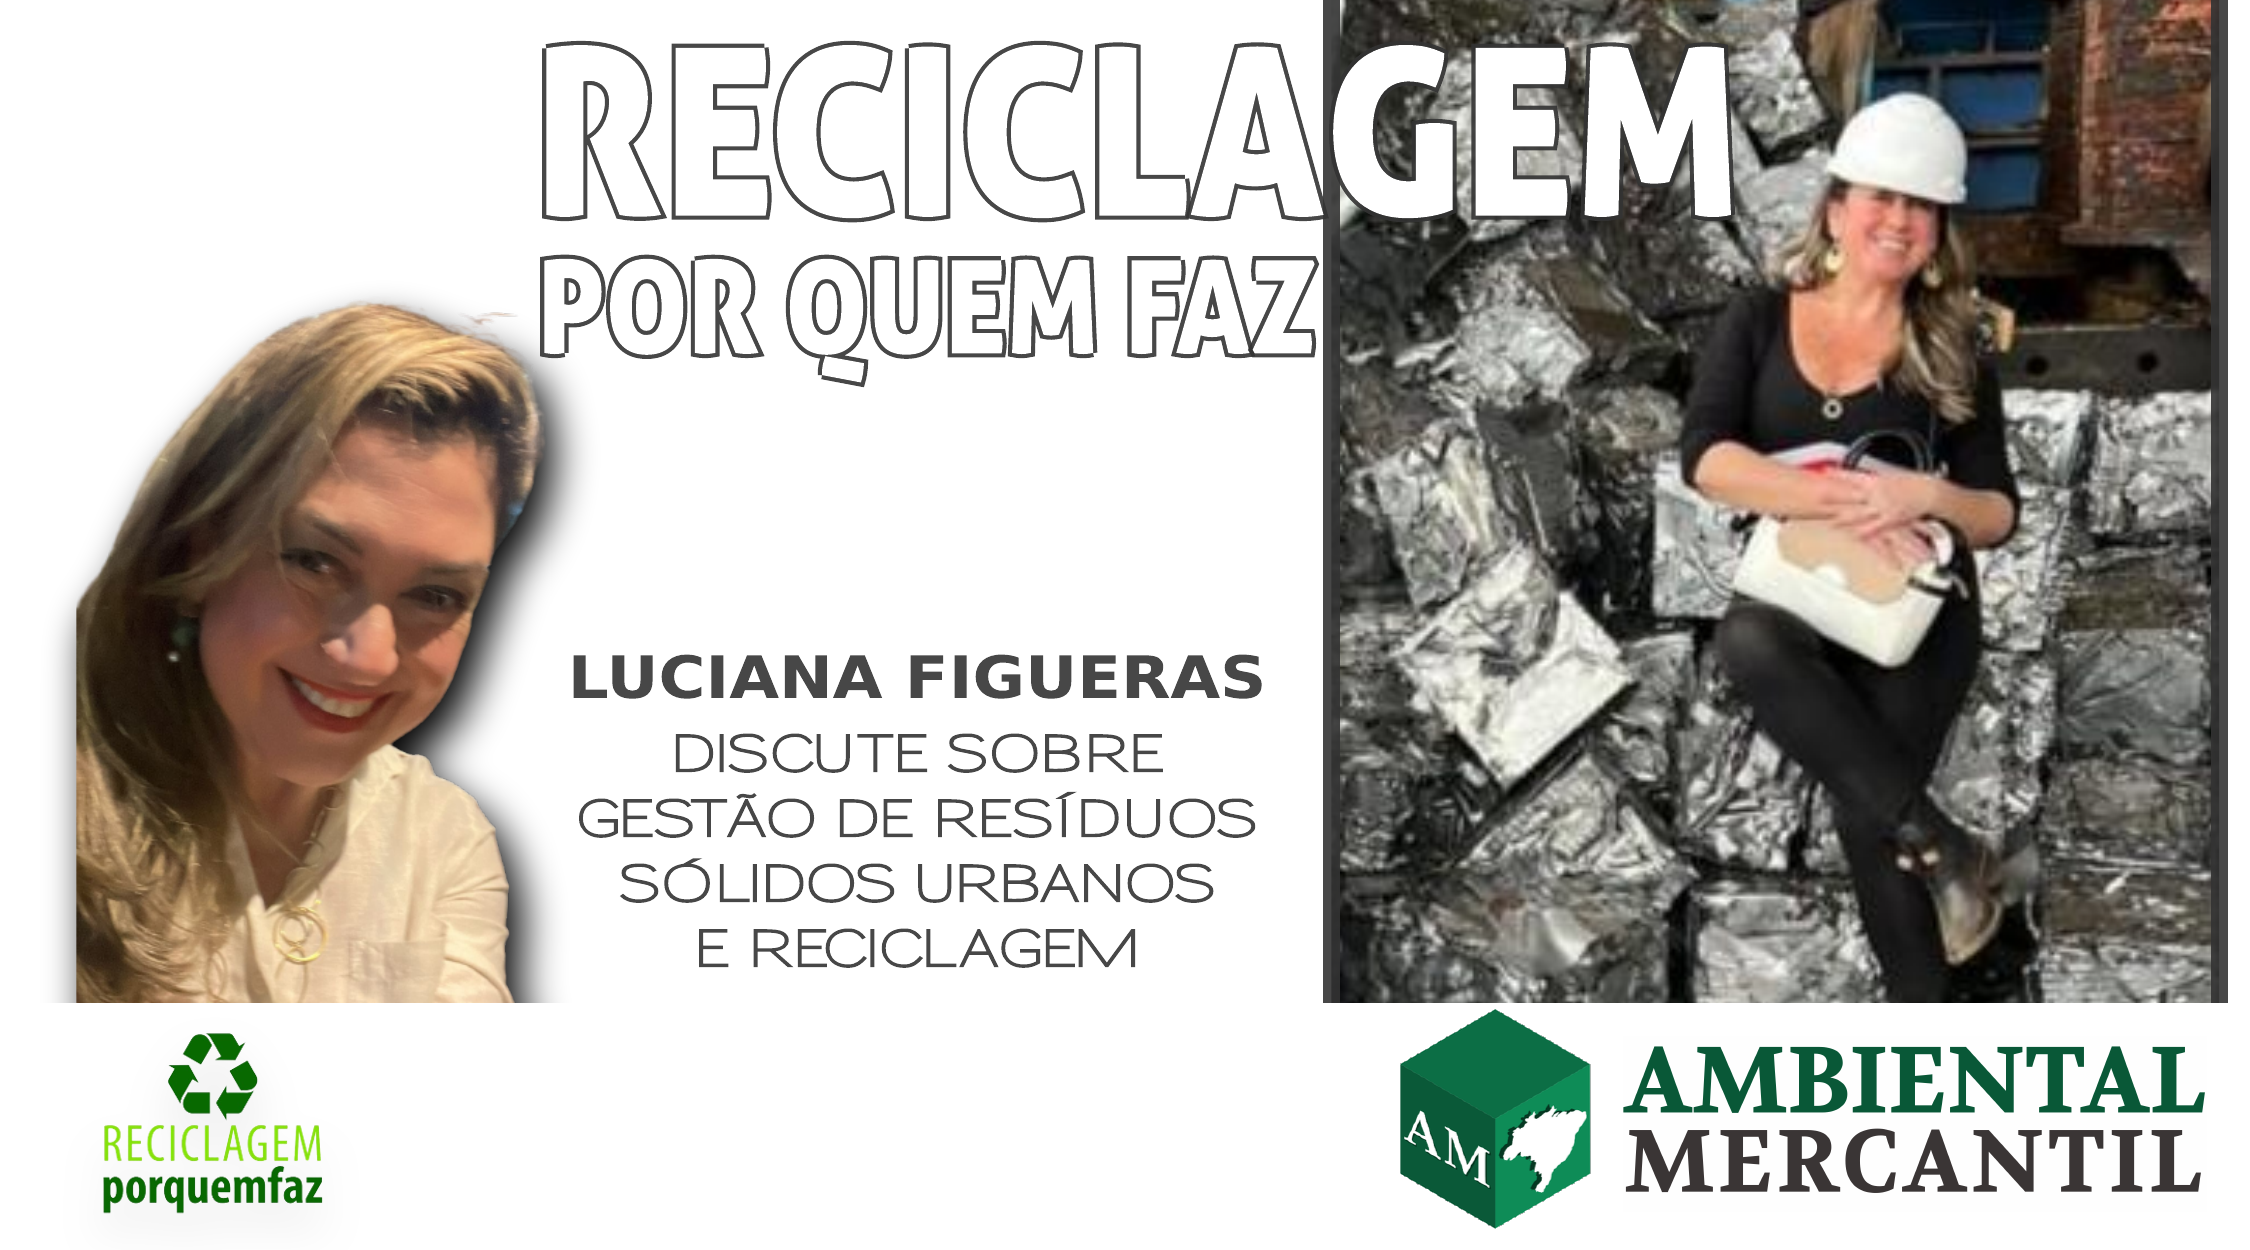 Reciclagem por quem faz #1: “Retrospectiva da Logística Reversa e da Reciclagem no Brasil”